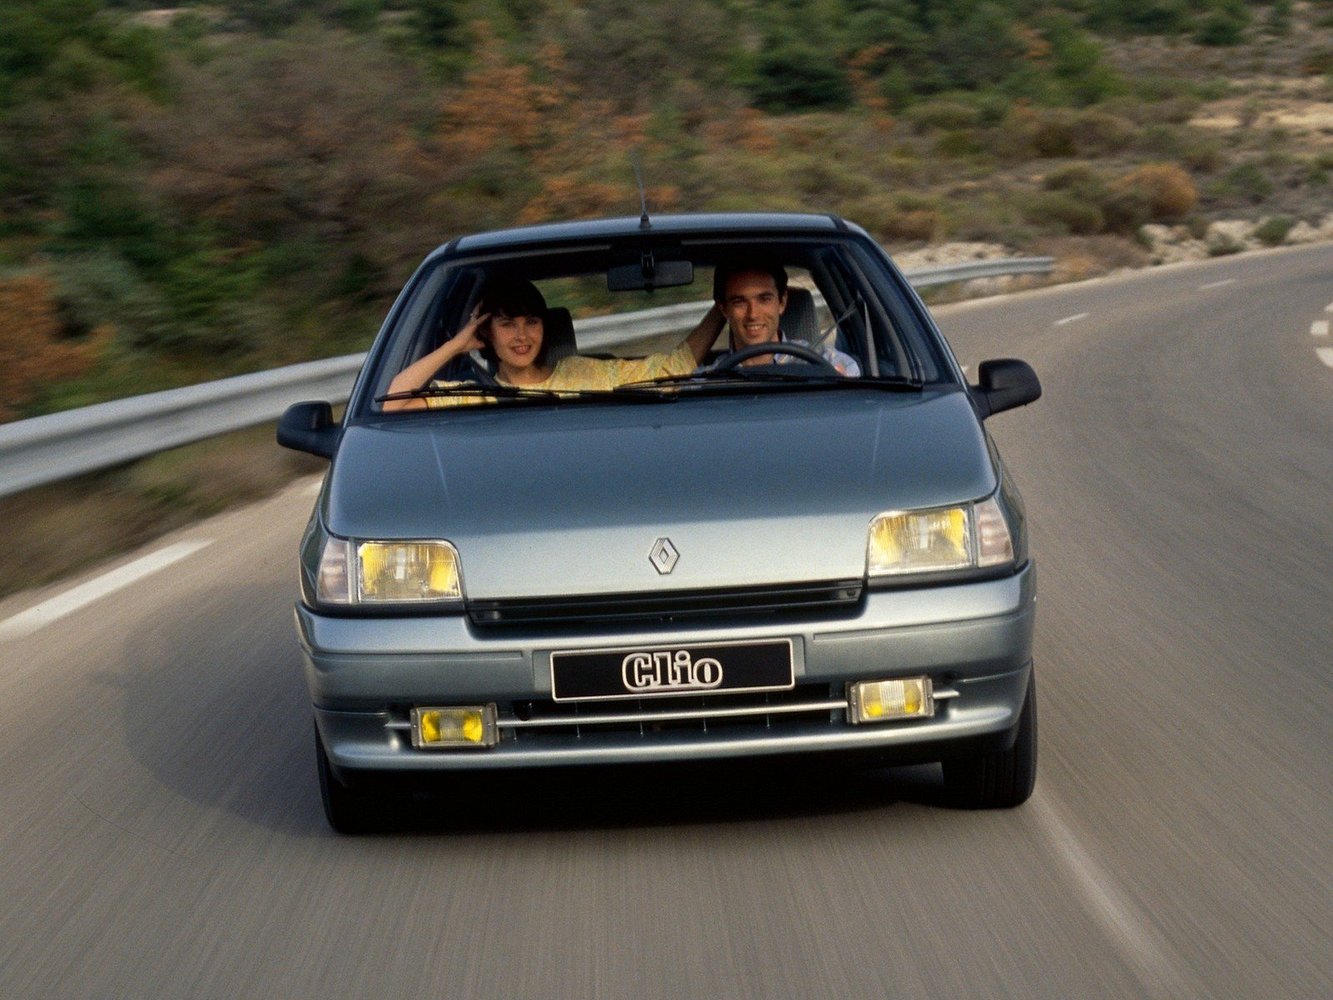 хэтчбек 5 дв. Renault Clio 1990 - 1998г выпуска модификация 1.1 MT (49 л.с.)